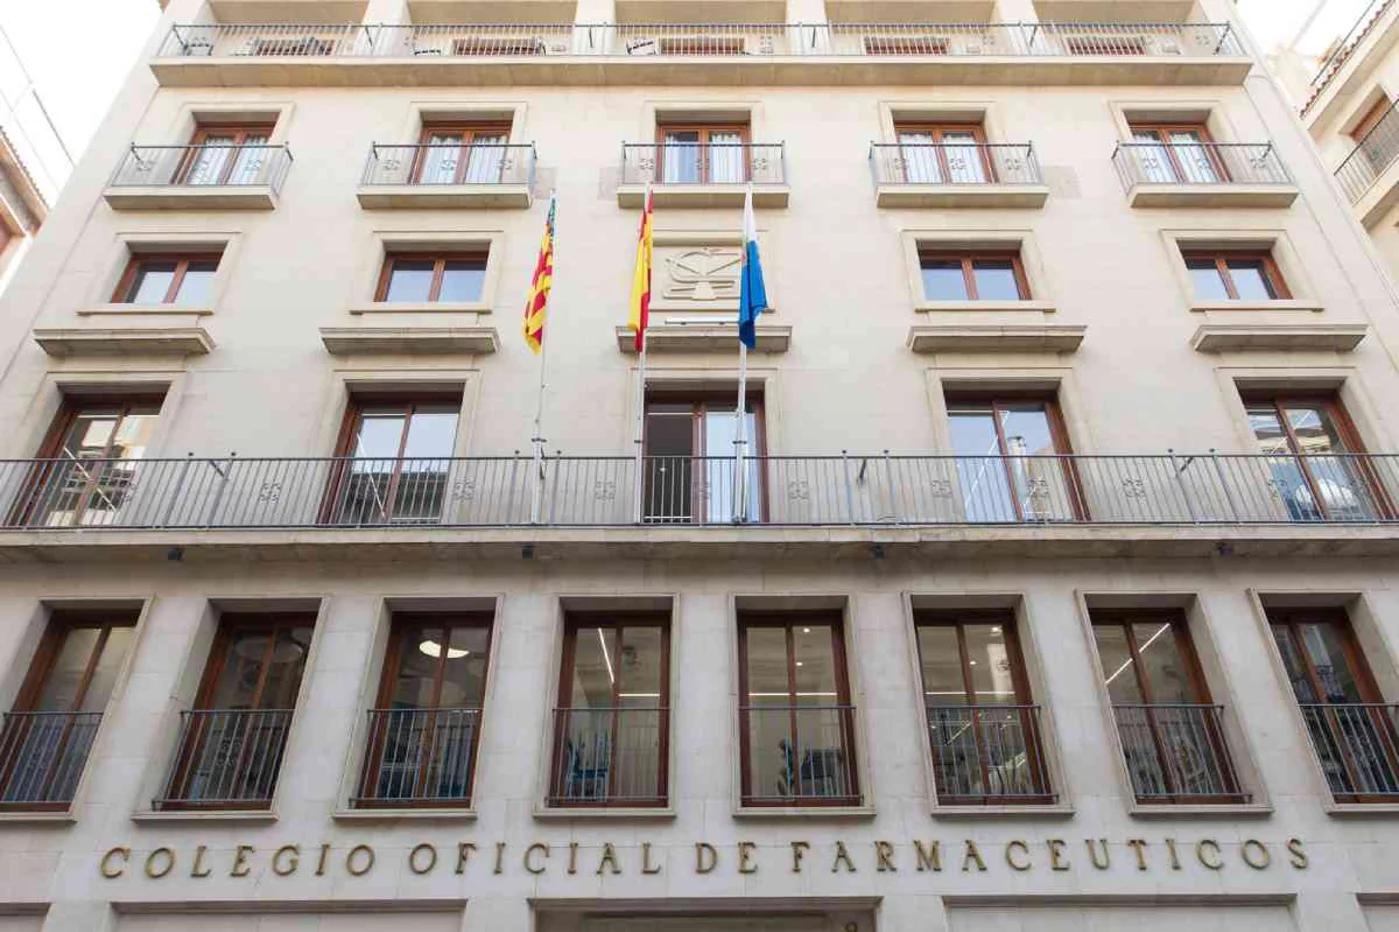 La Diputación de Alicante ha acordado con el COF de Alicante subvencionar con 140.000 euros para 2022 y 2023 a las farmacias rurales. Foto: COF ALICANTE.